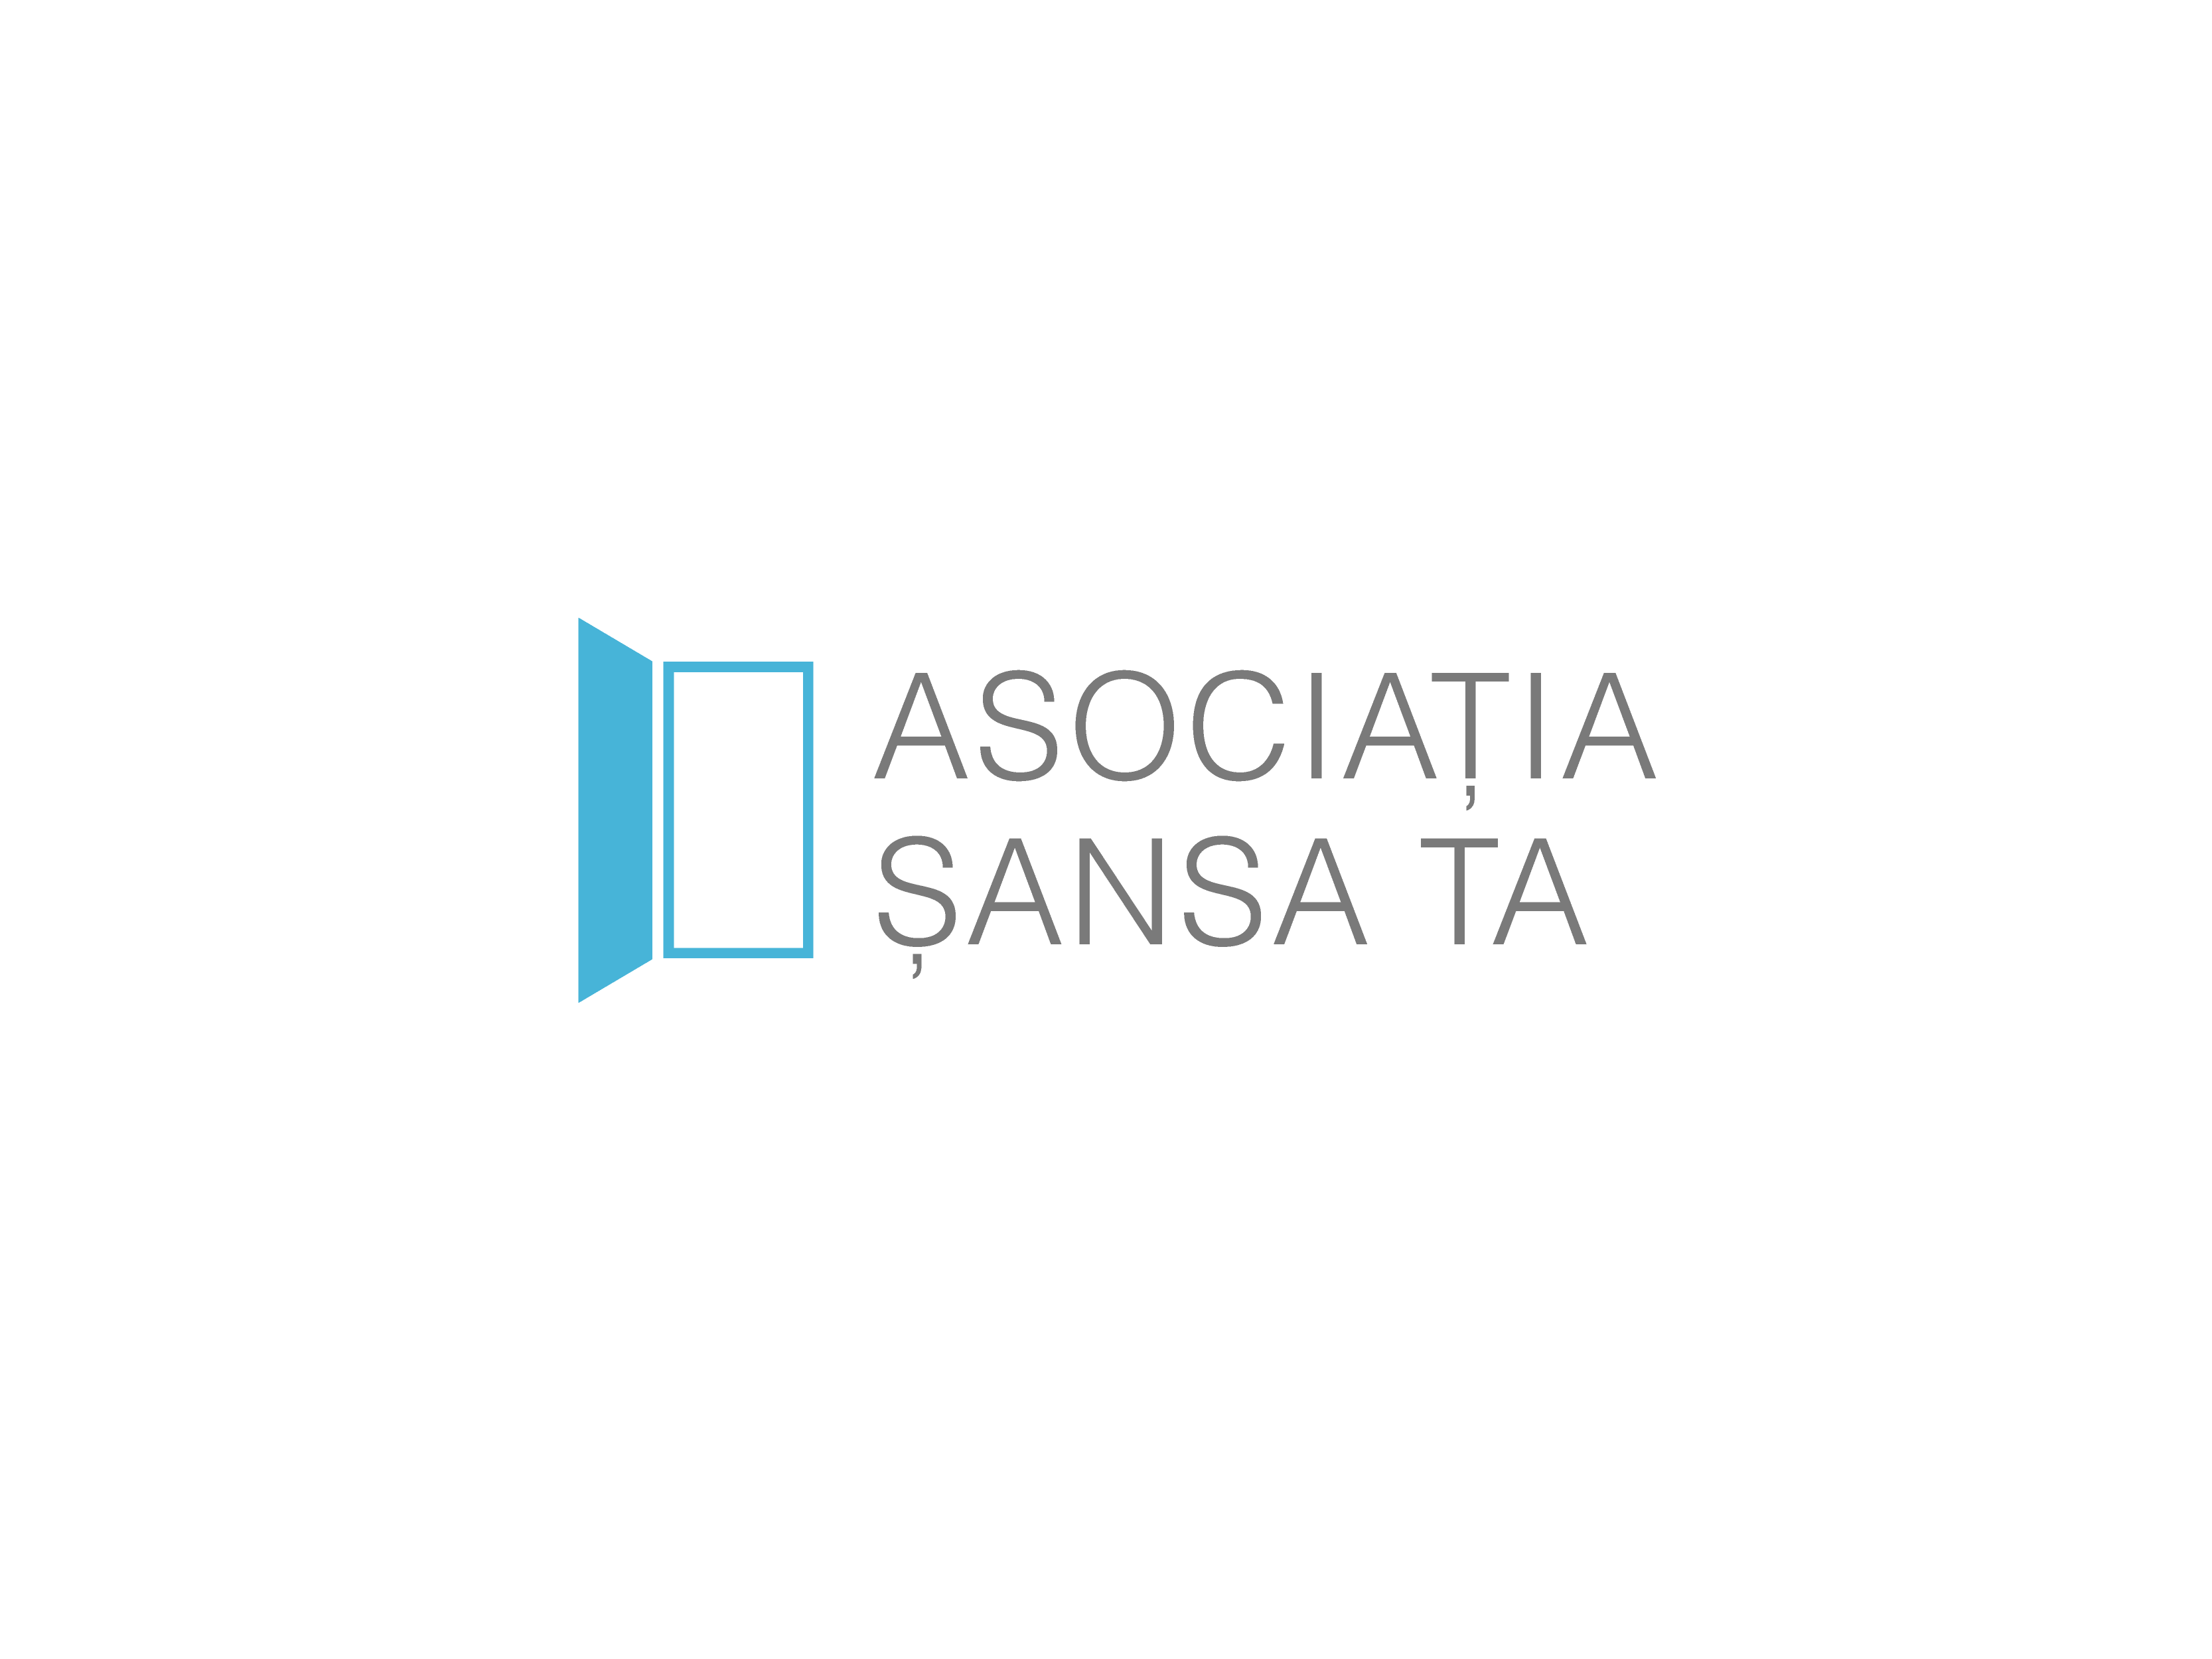 ASOCIATIA SANSA TA logo